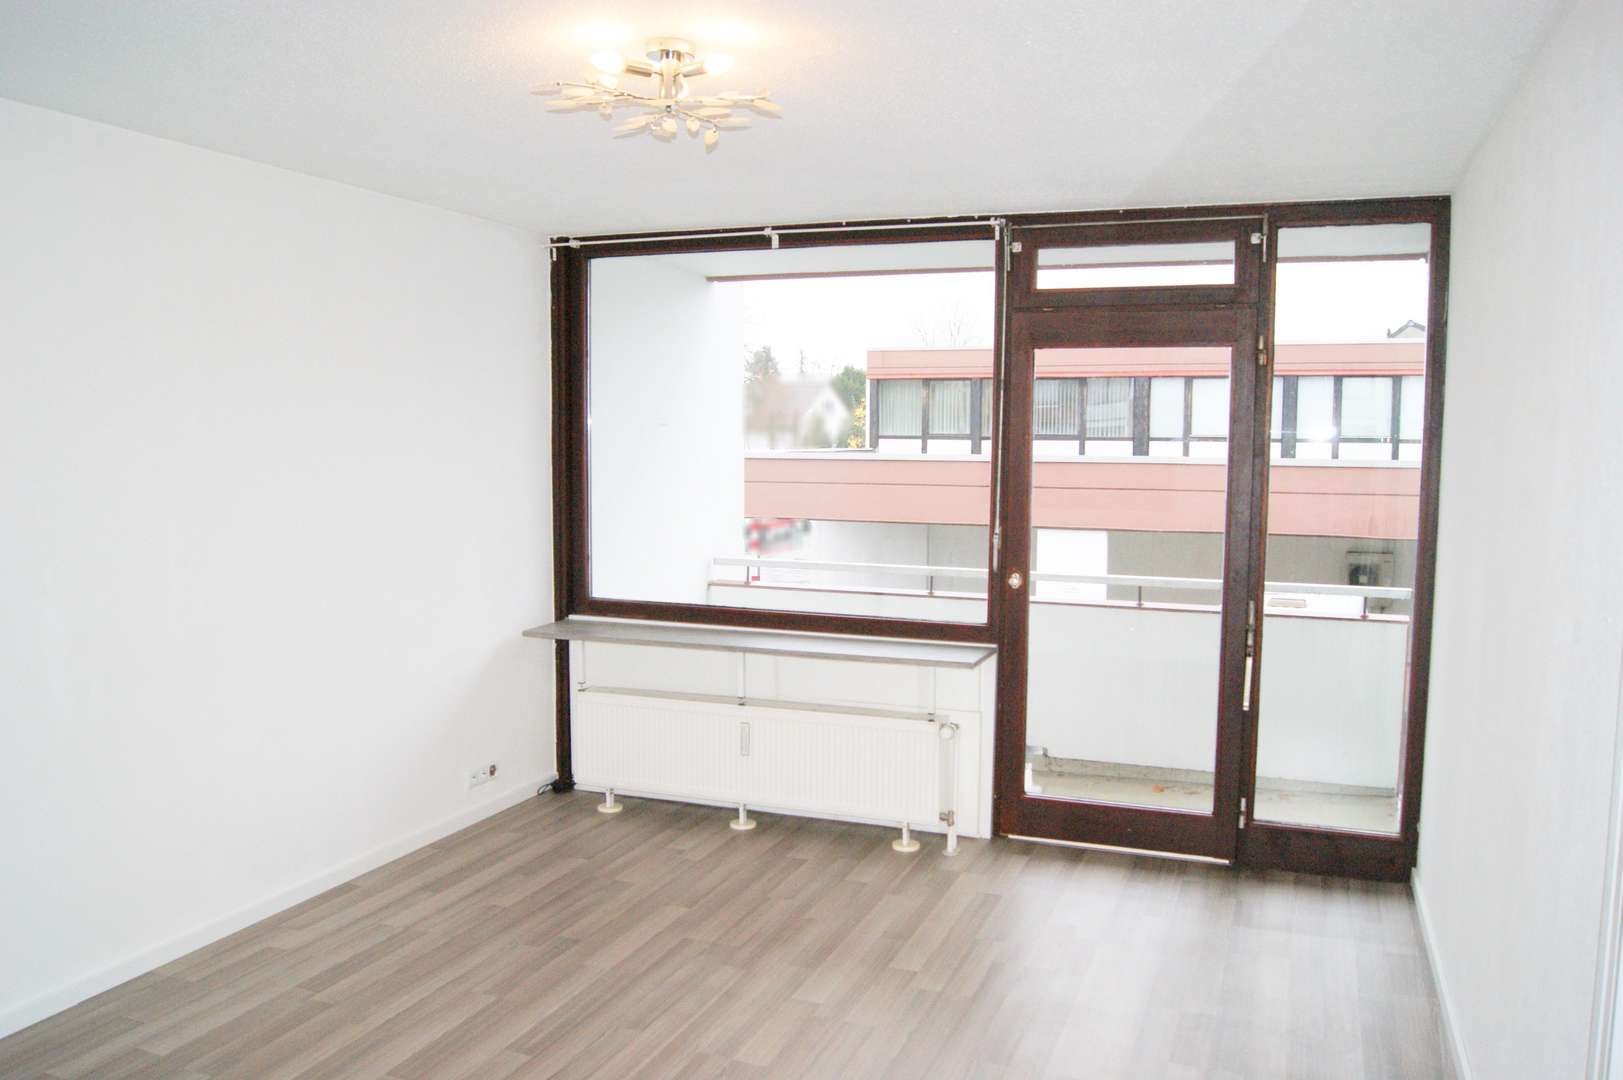 Wohnzimmer (Bild 1) - Appartement in 51427 Bergisch Gladbach mit 44m² kaufen